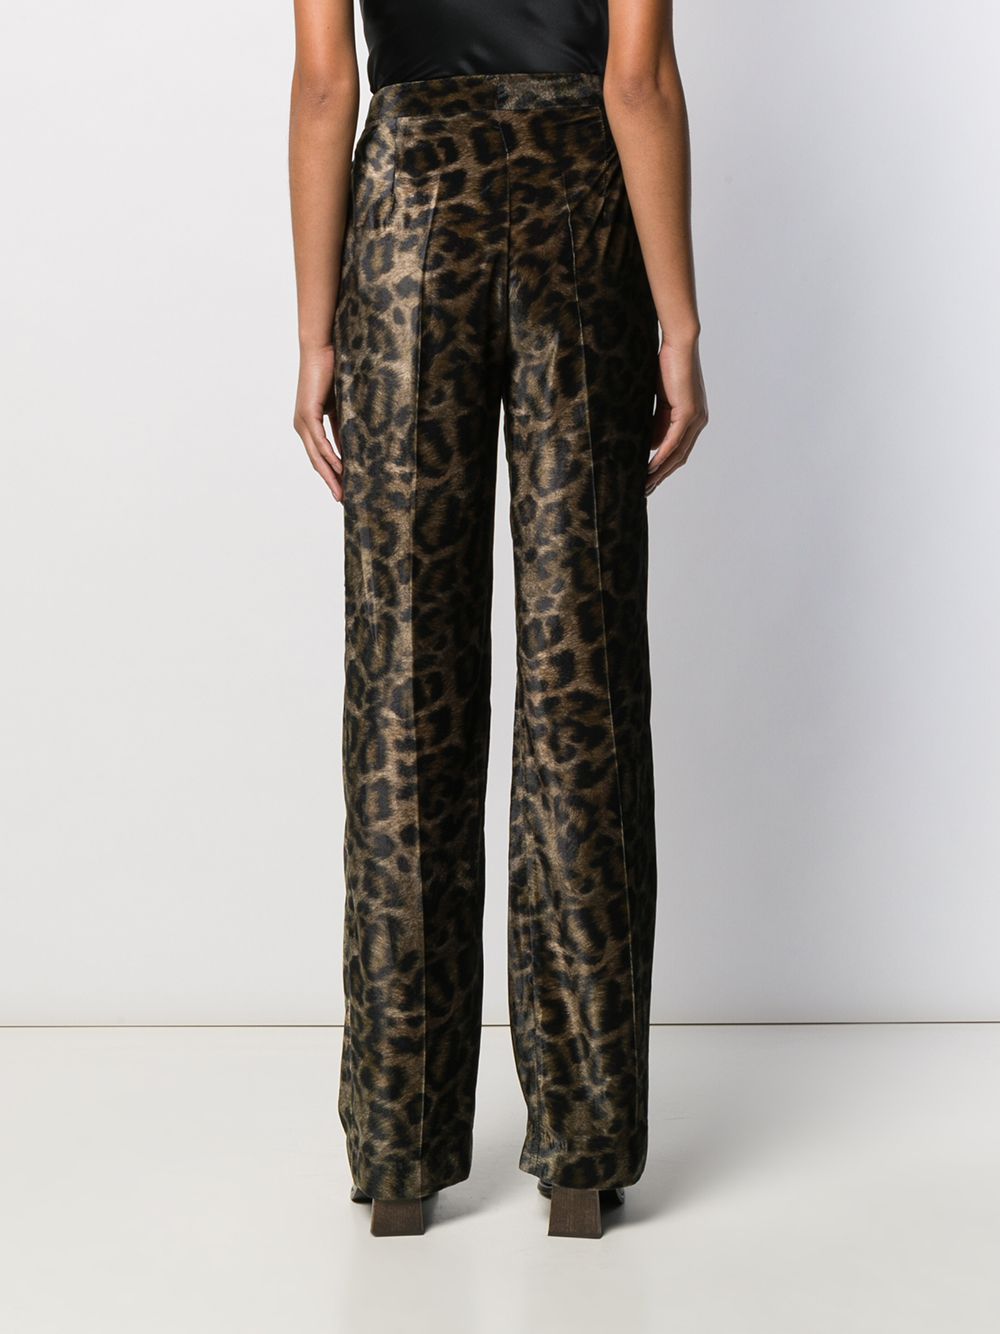 фото John richmond брюки tameside с леопардовым принтом